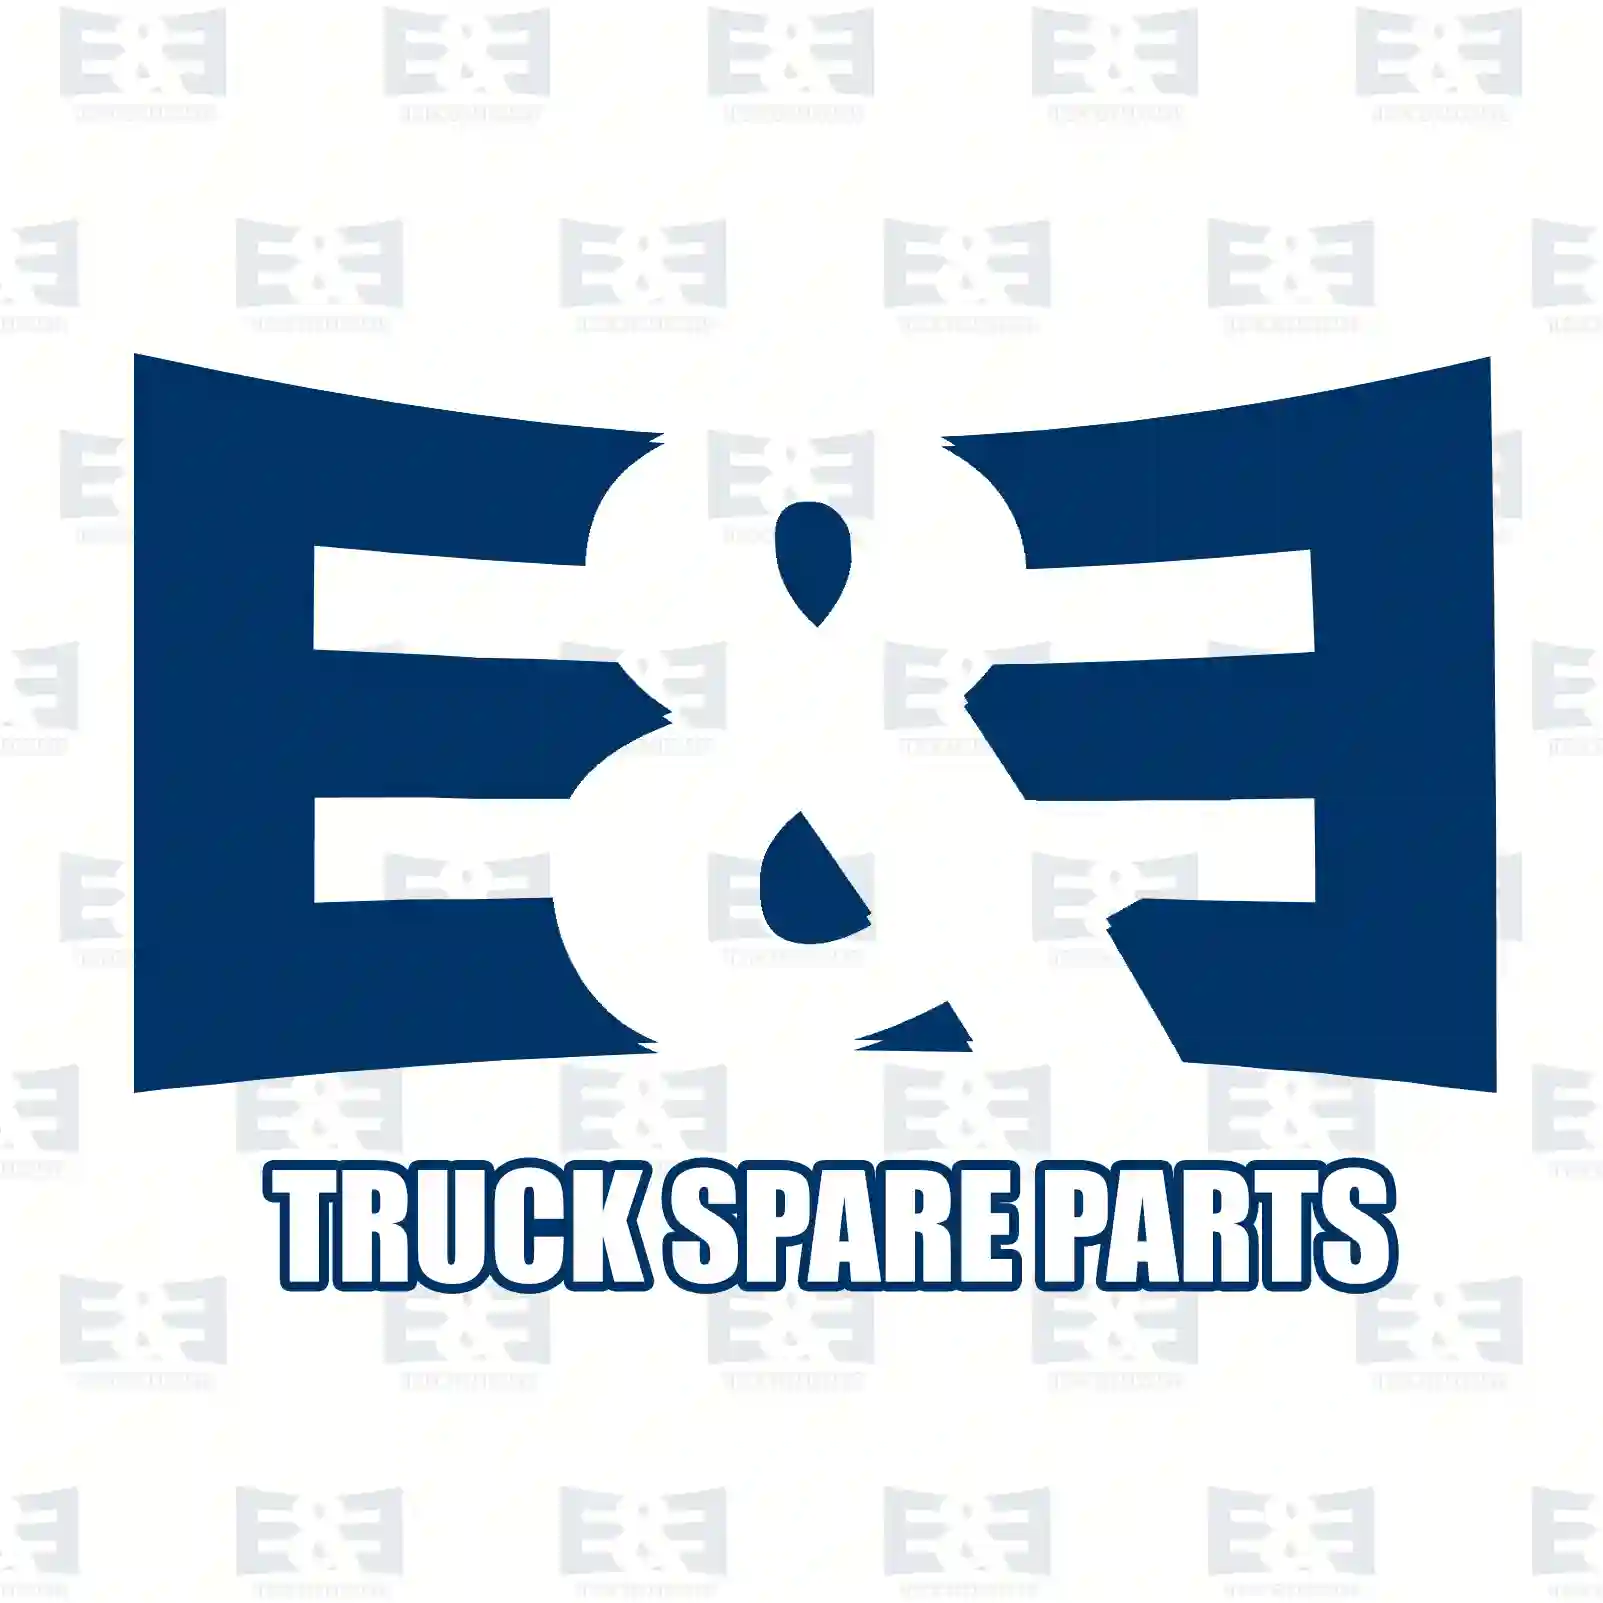 O-ring, 2E2284890, JAE0210309748, 0299979748, 9469970045 ||  2E2284890 E&E Truck Spare Parts | Truck Spare Parts, Auotomotive Spare Parts O-ring, 2E2284890, JAE0210309748, 0299979748, 9469970045 ||  2E2284890 E&E Truck Spare Parts | Truck Spare Parts, Auotomotive Spare Parts